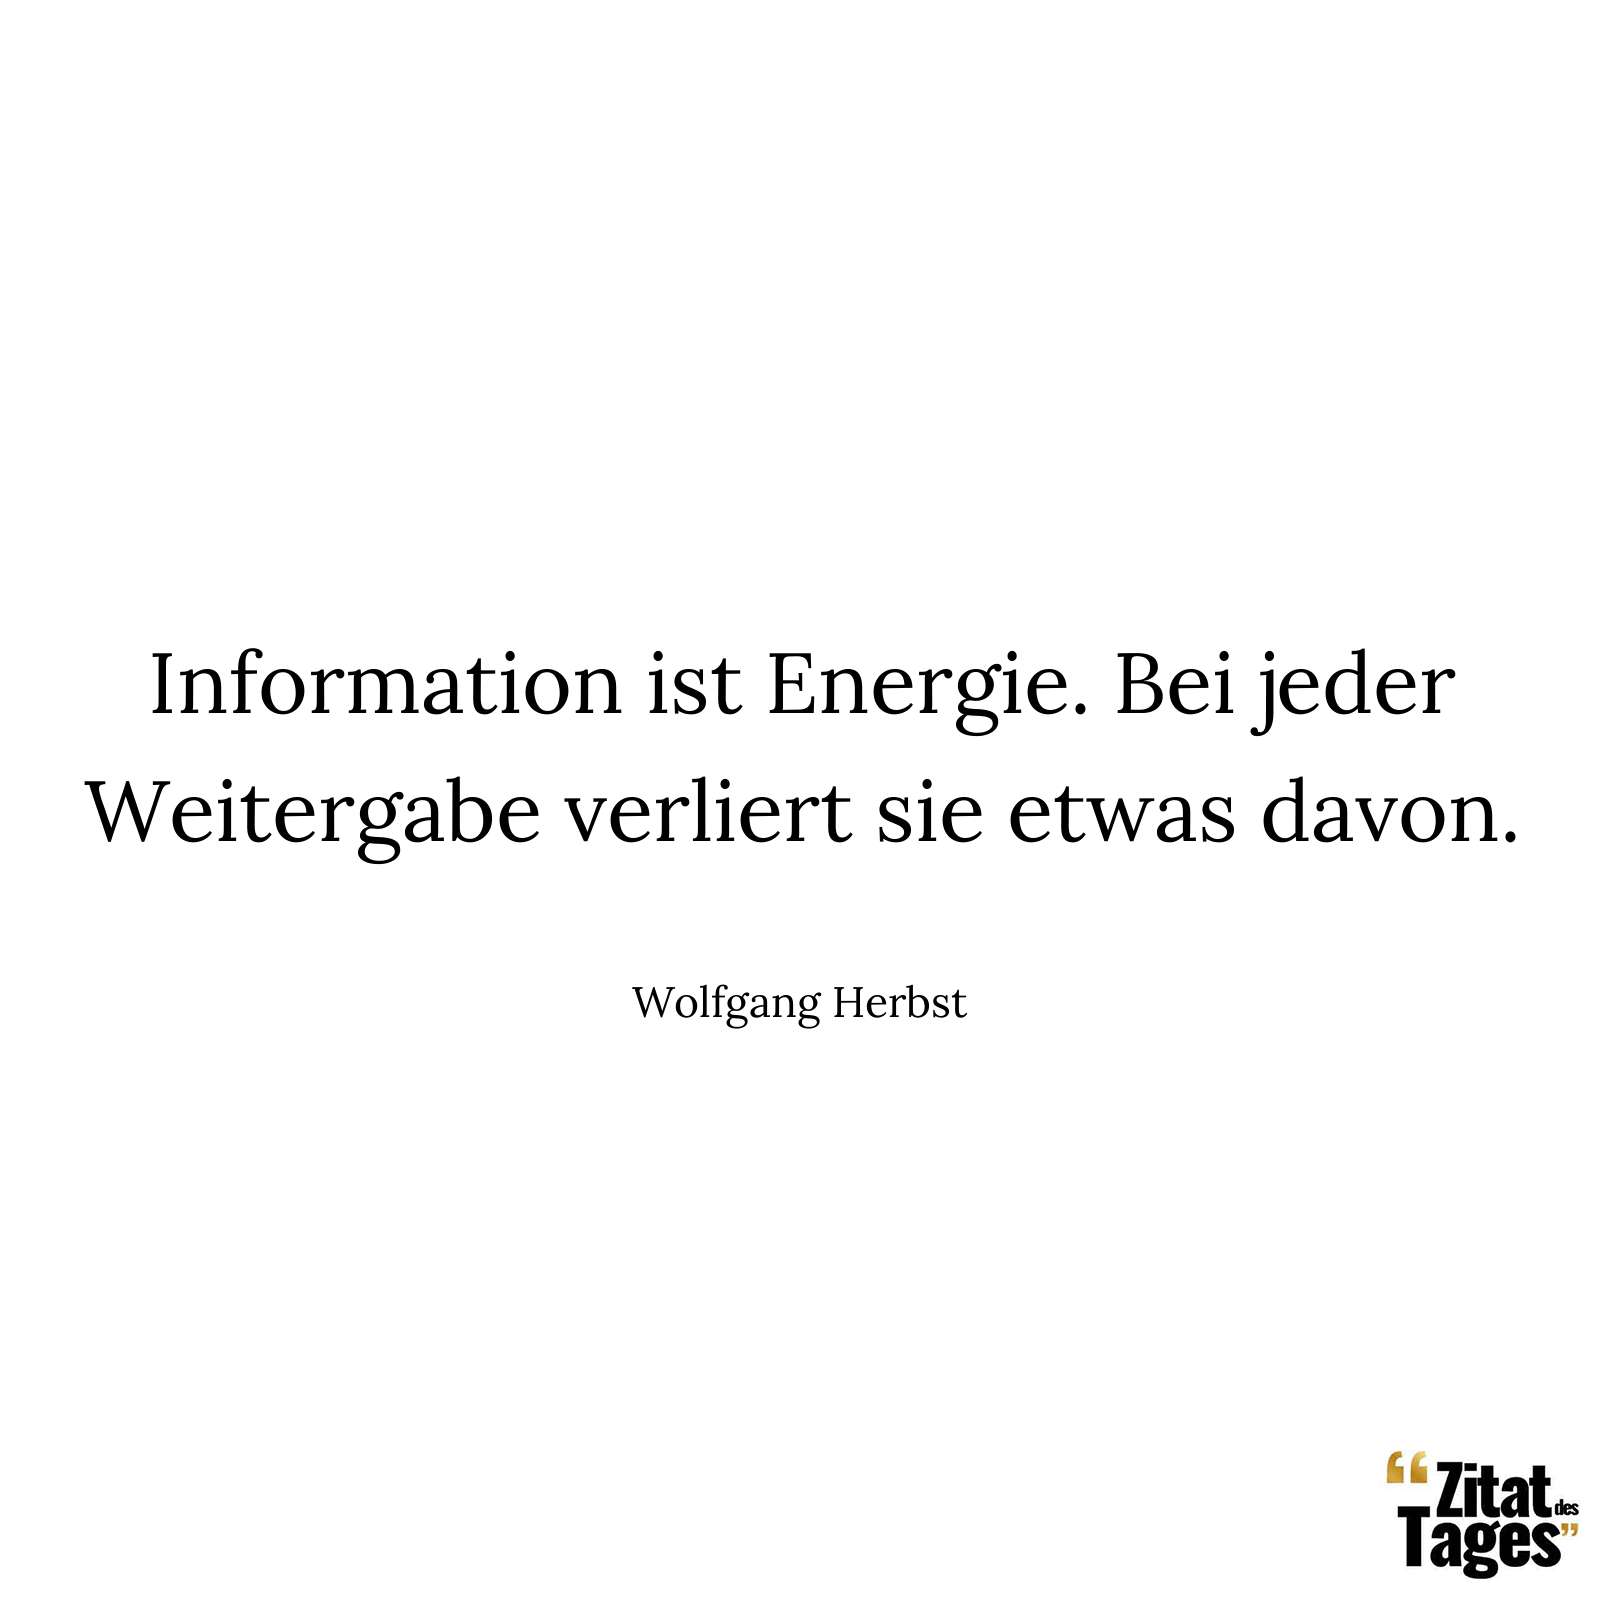 Information ist Energie. Bei jeder Weitergabe verliert sie etwas davon. - Wolfgang Herbst